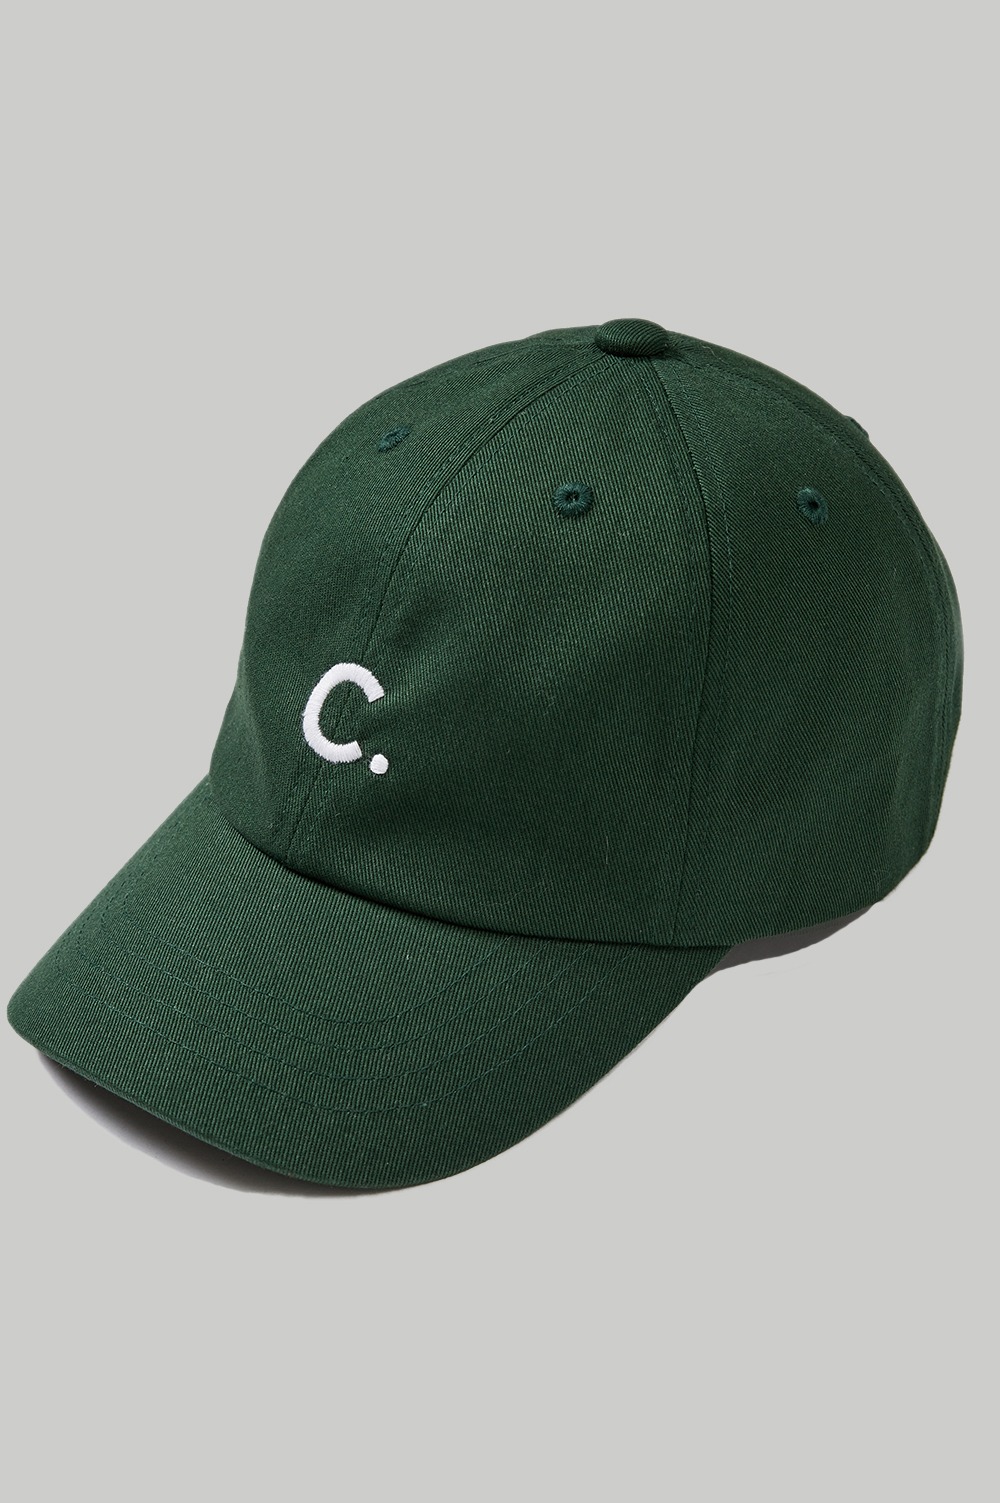 clove - [22FW clove] Cotton Baseball Cap_Kids (Dark Green)